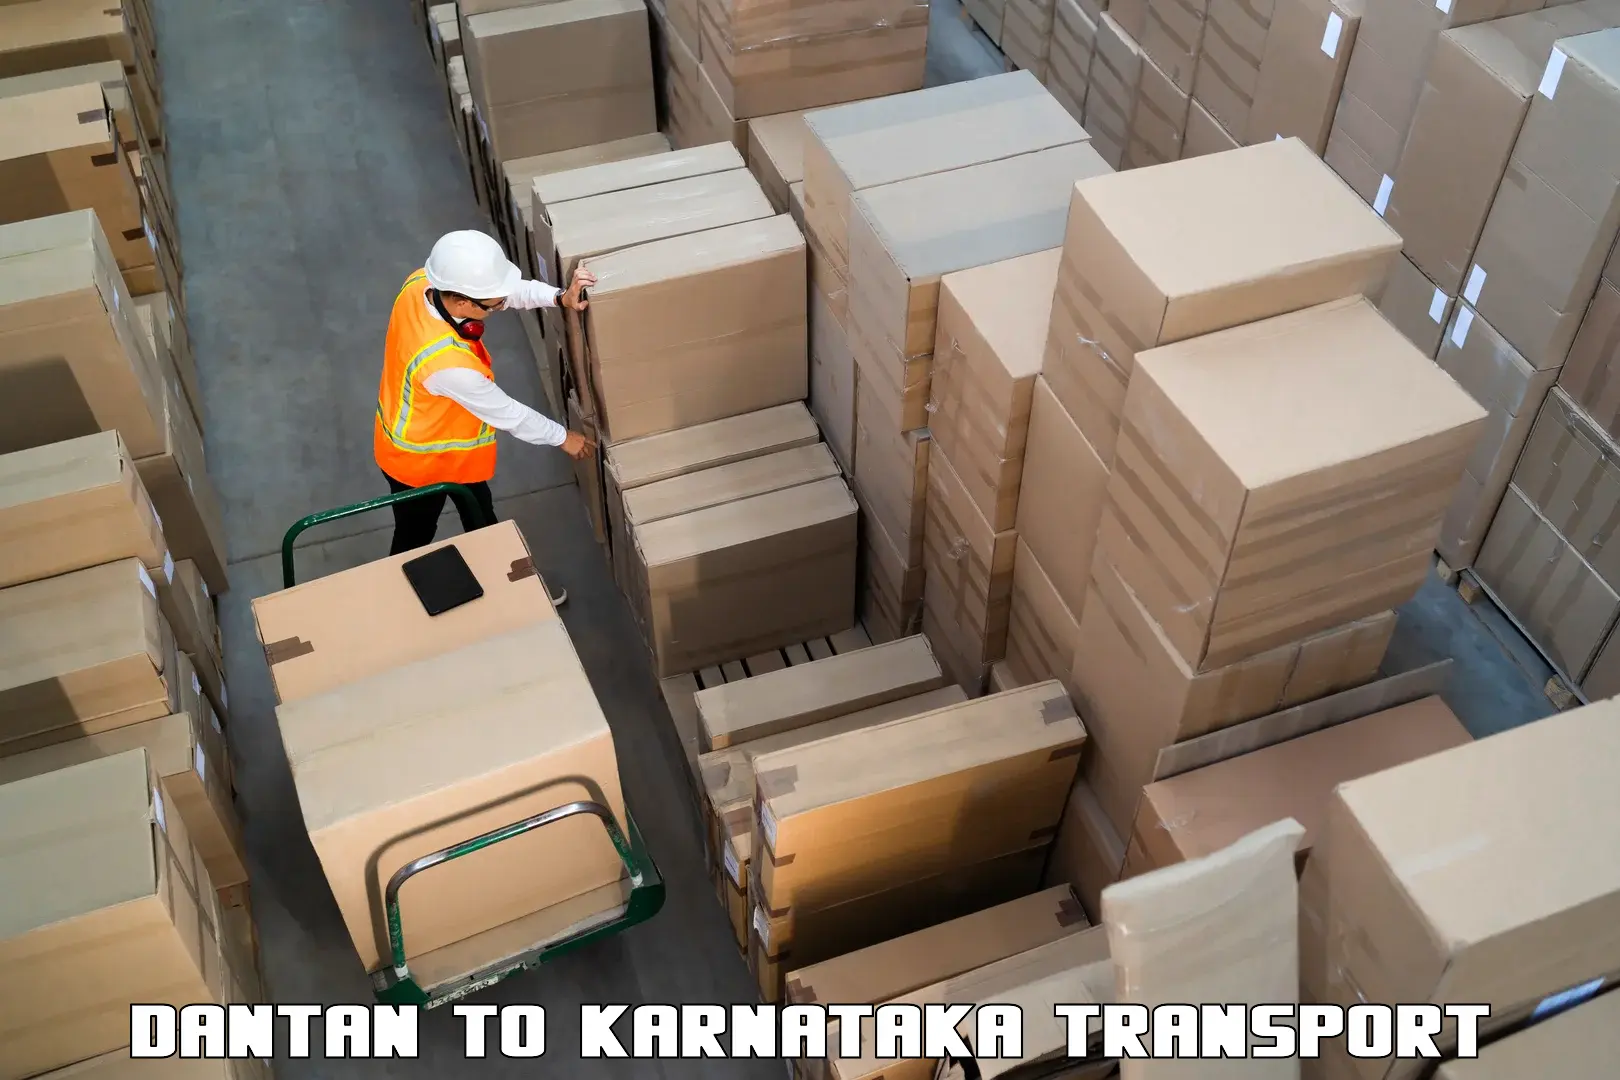 Express transport services Dantan to Karnataka